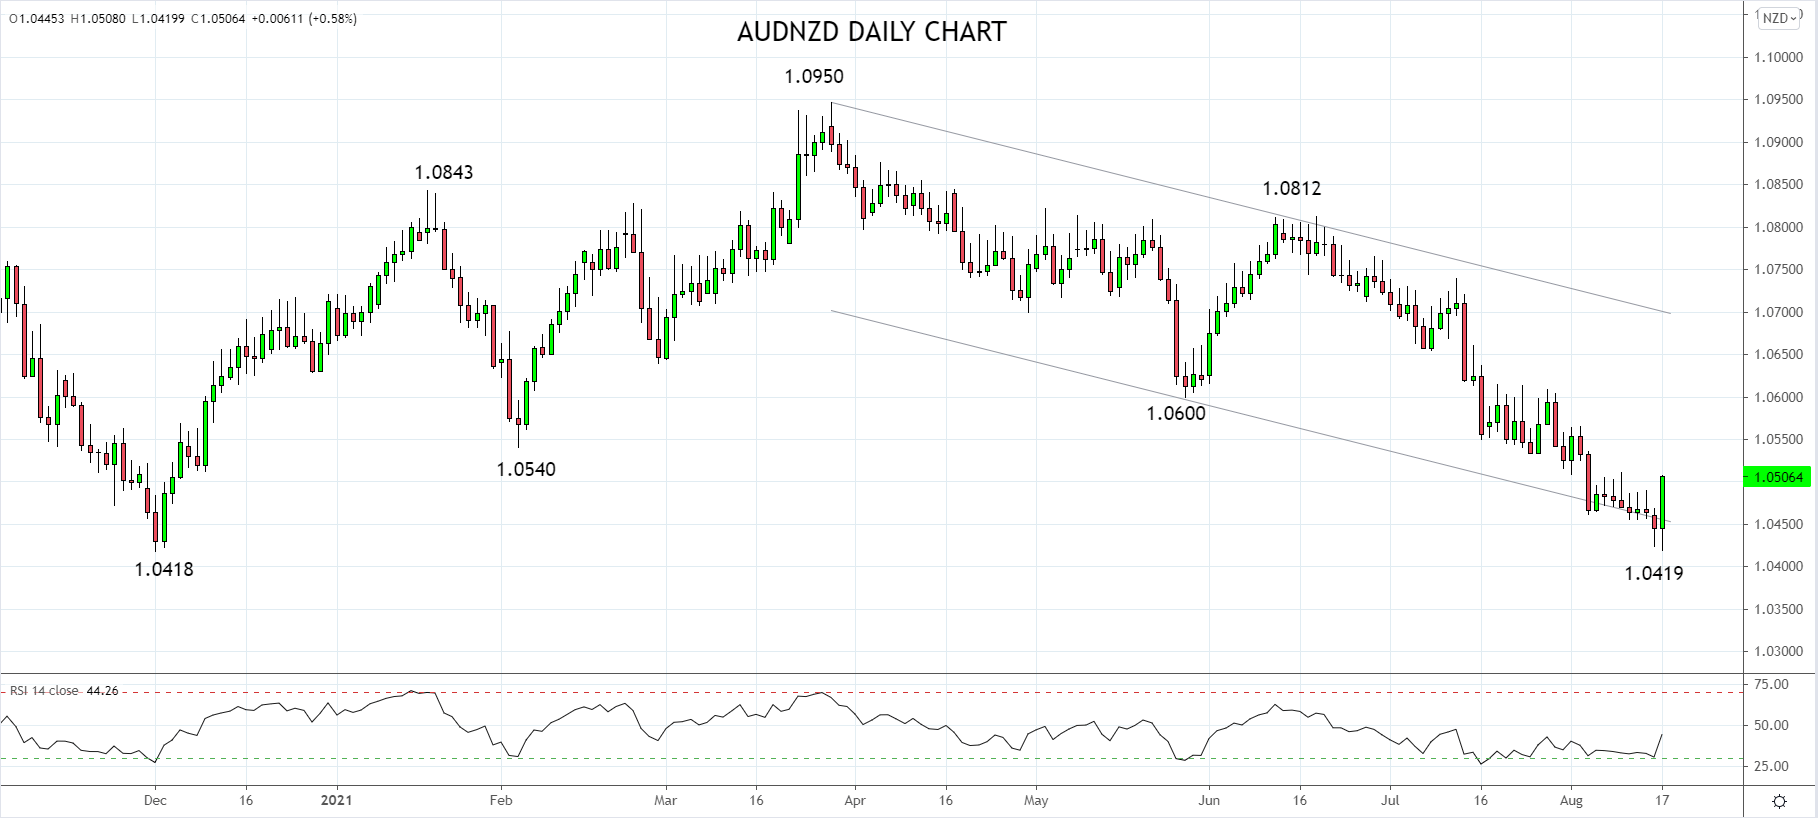 AUDNZD Daily chart